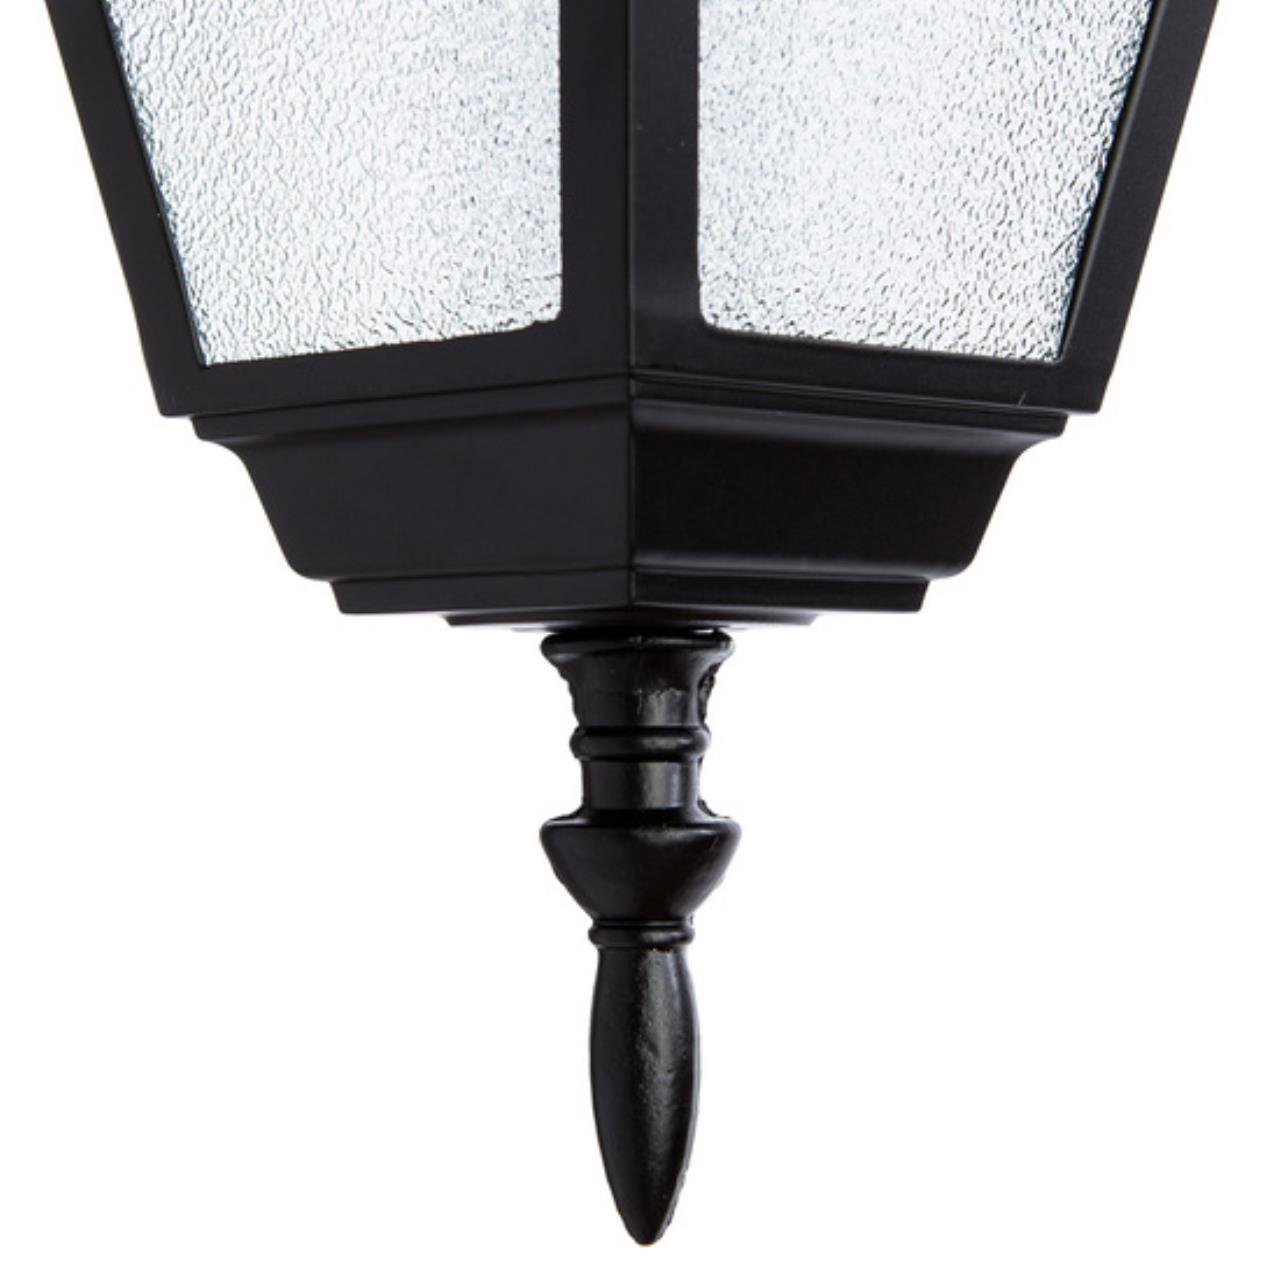 Уличный подвесный светильник Arte lamp A1015SO-1BK